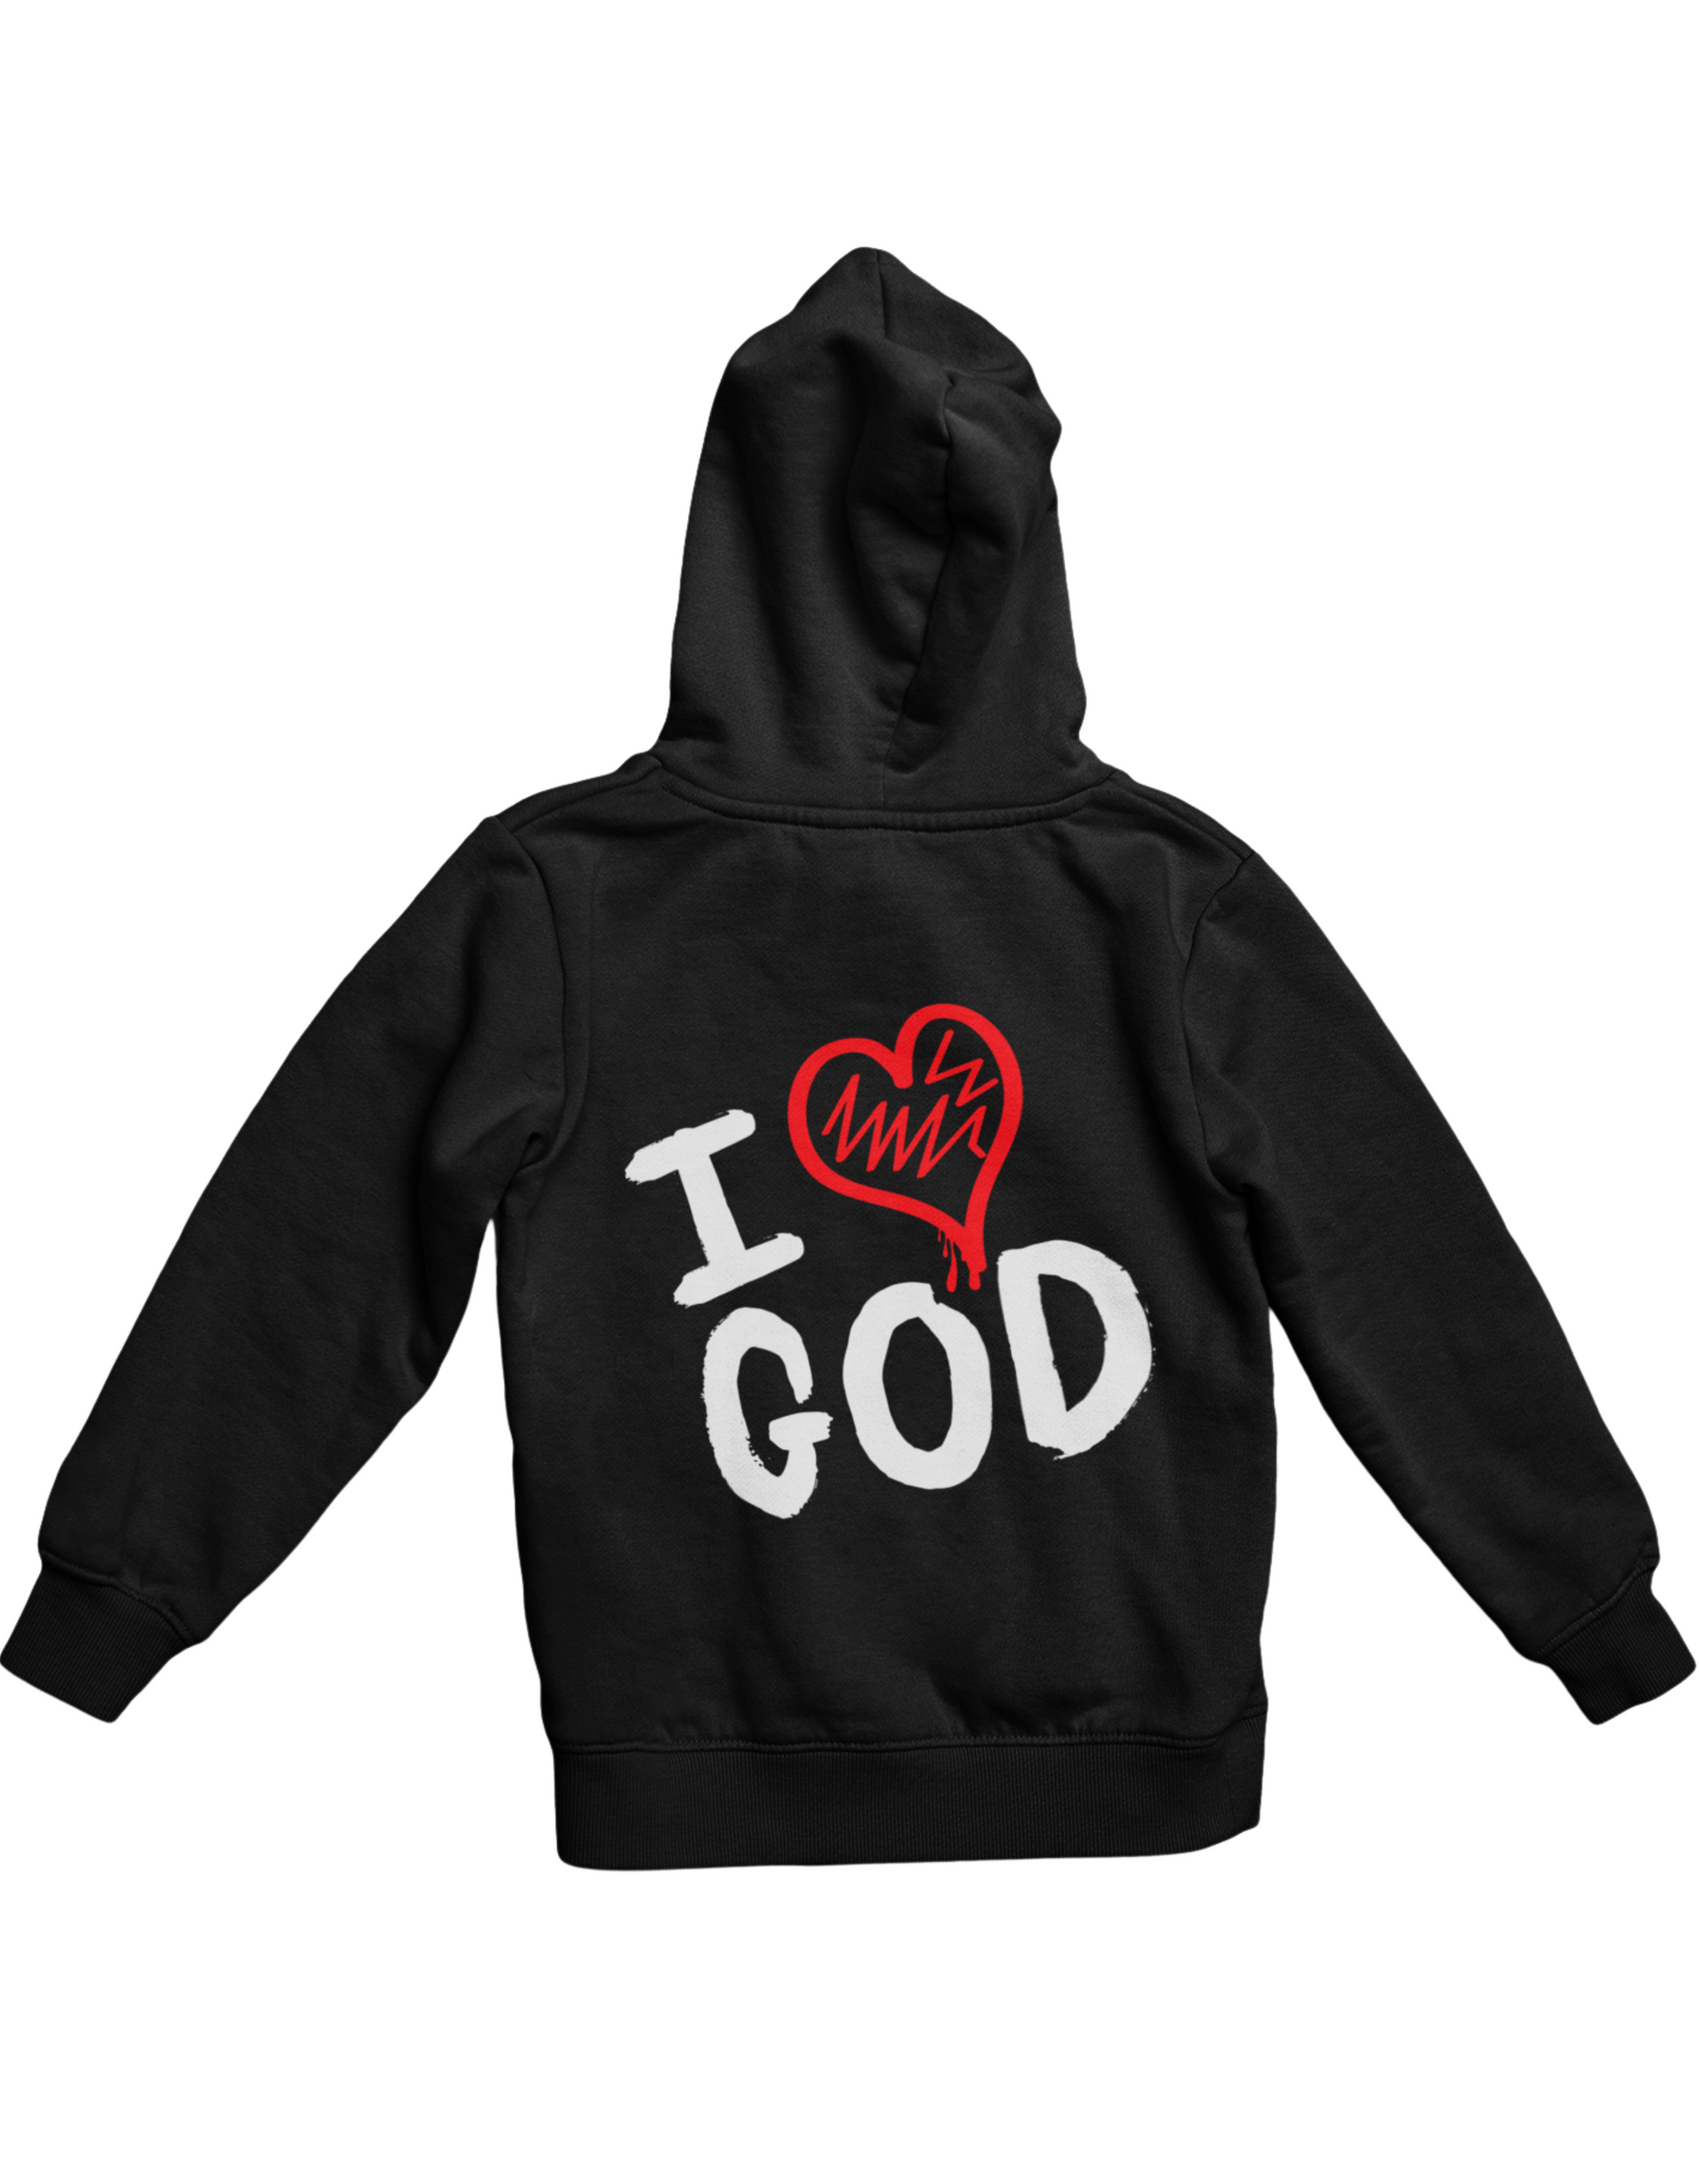 christian faith based unisex hoodies